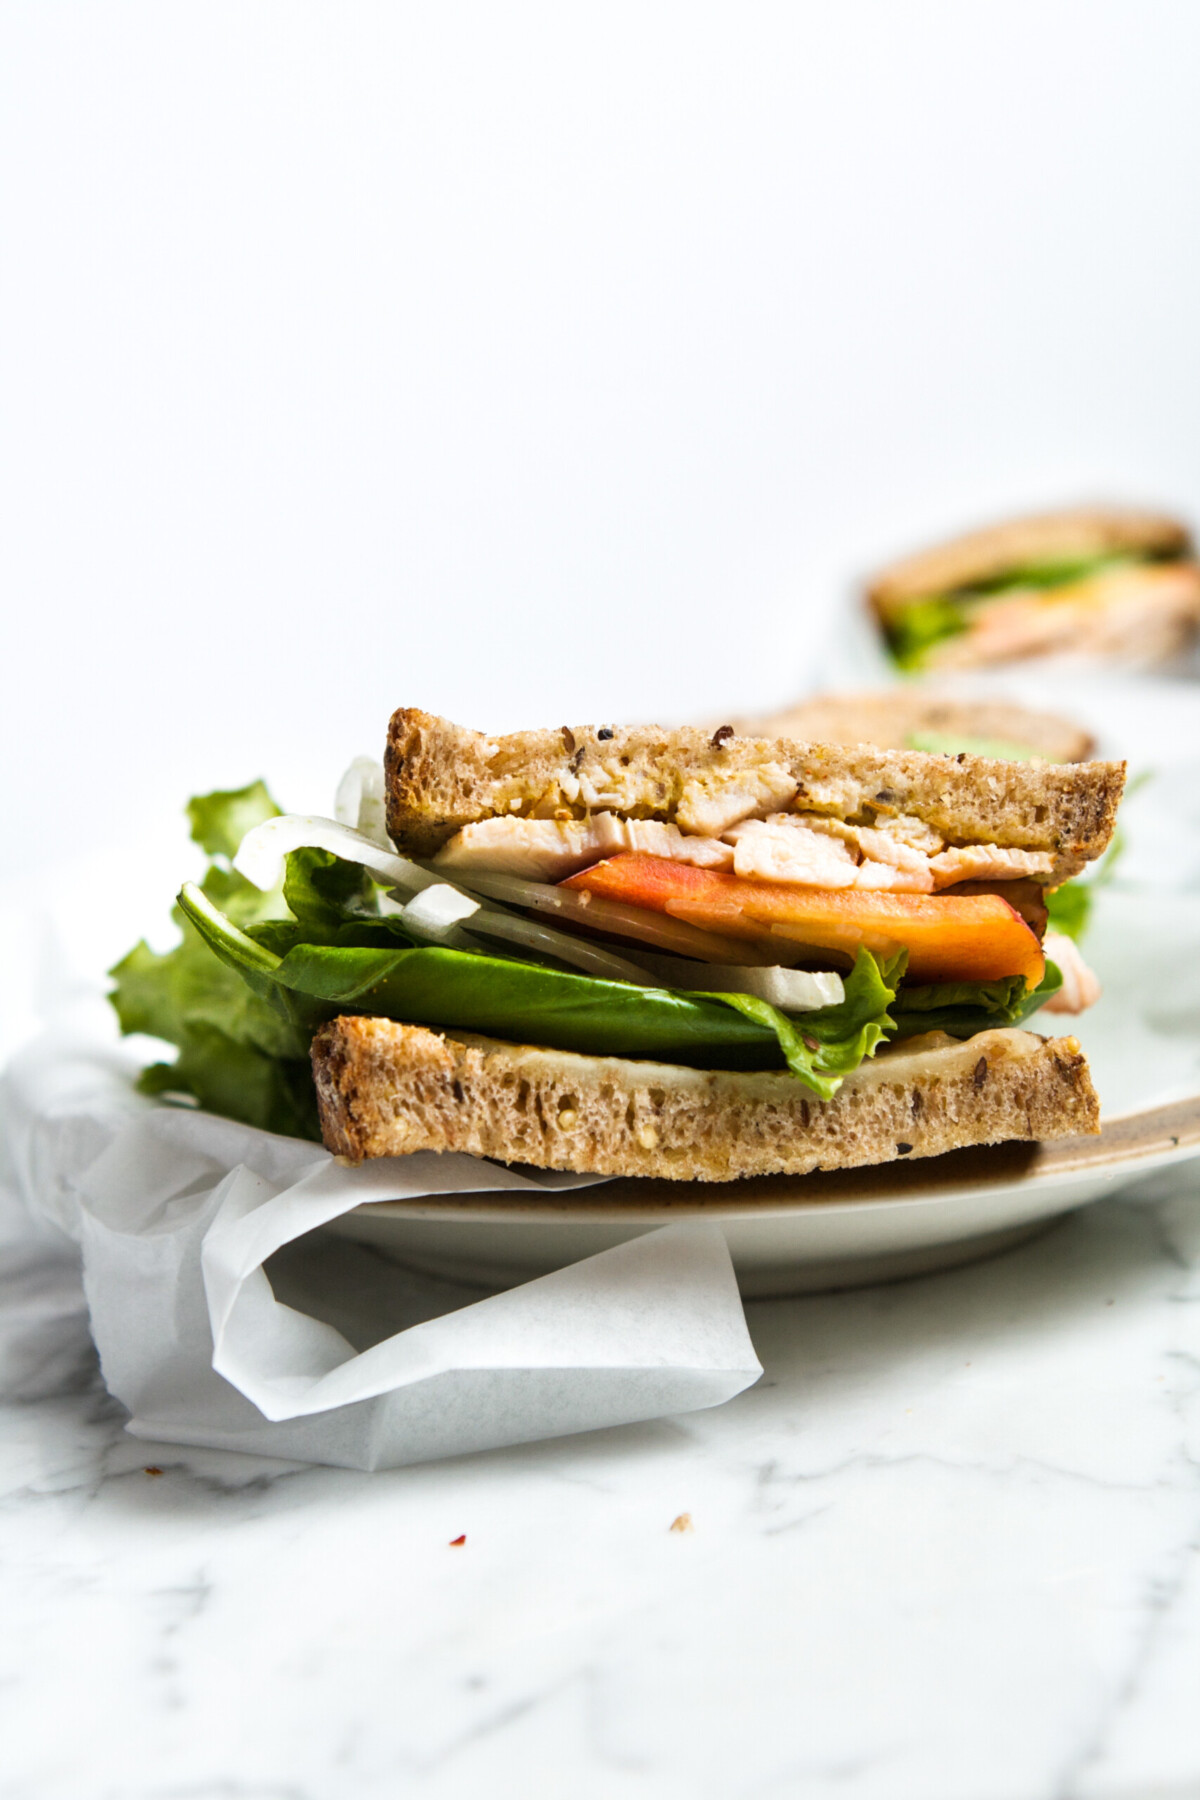 Turkey, Peach & Basil Sandwich | Zestful Kitchen